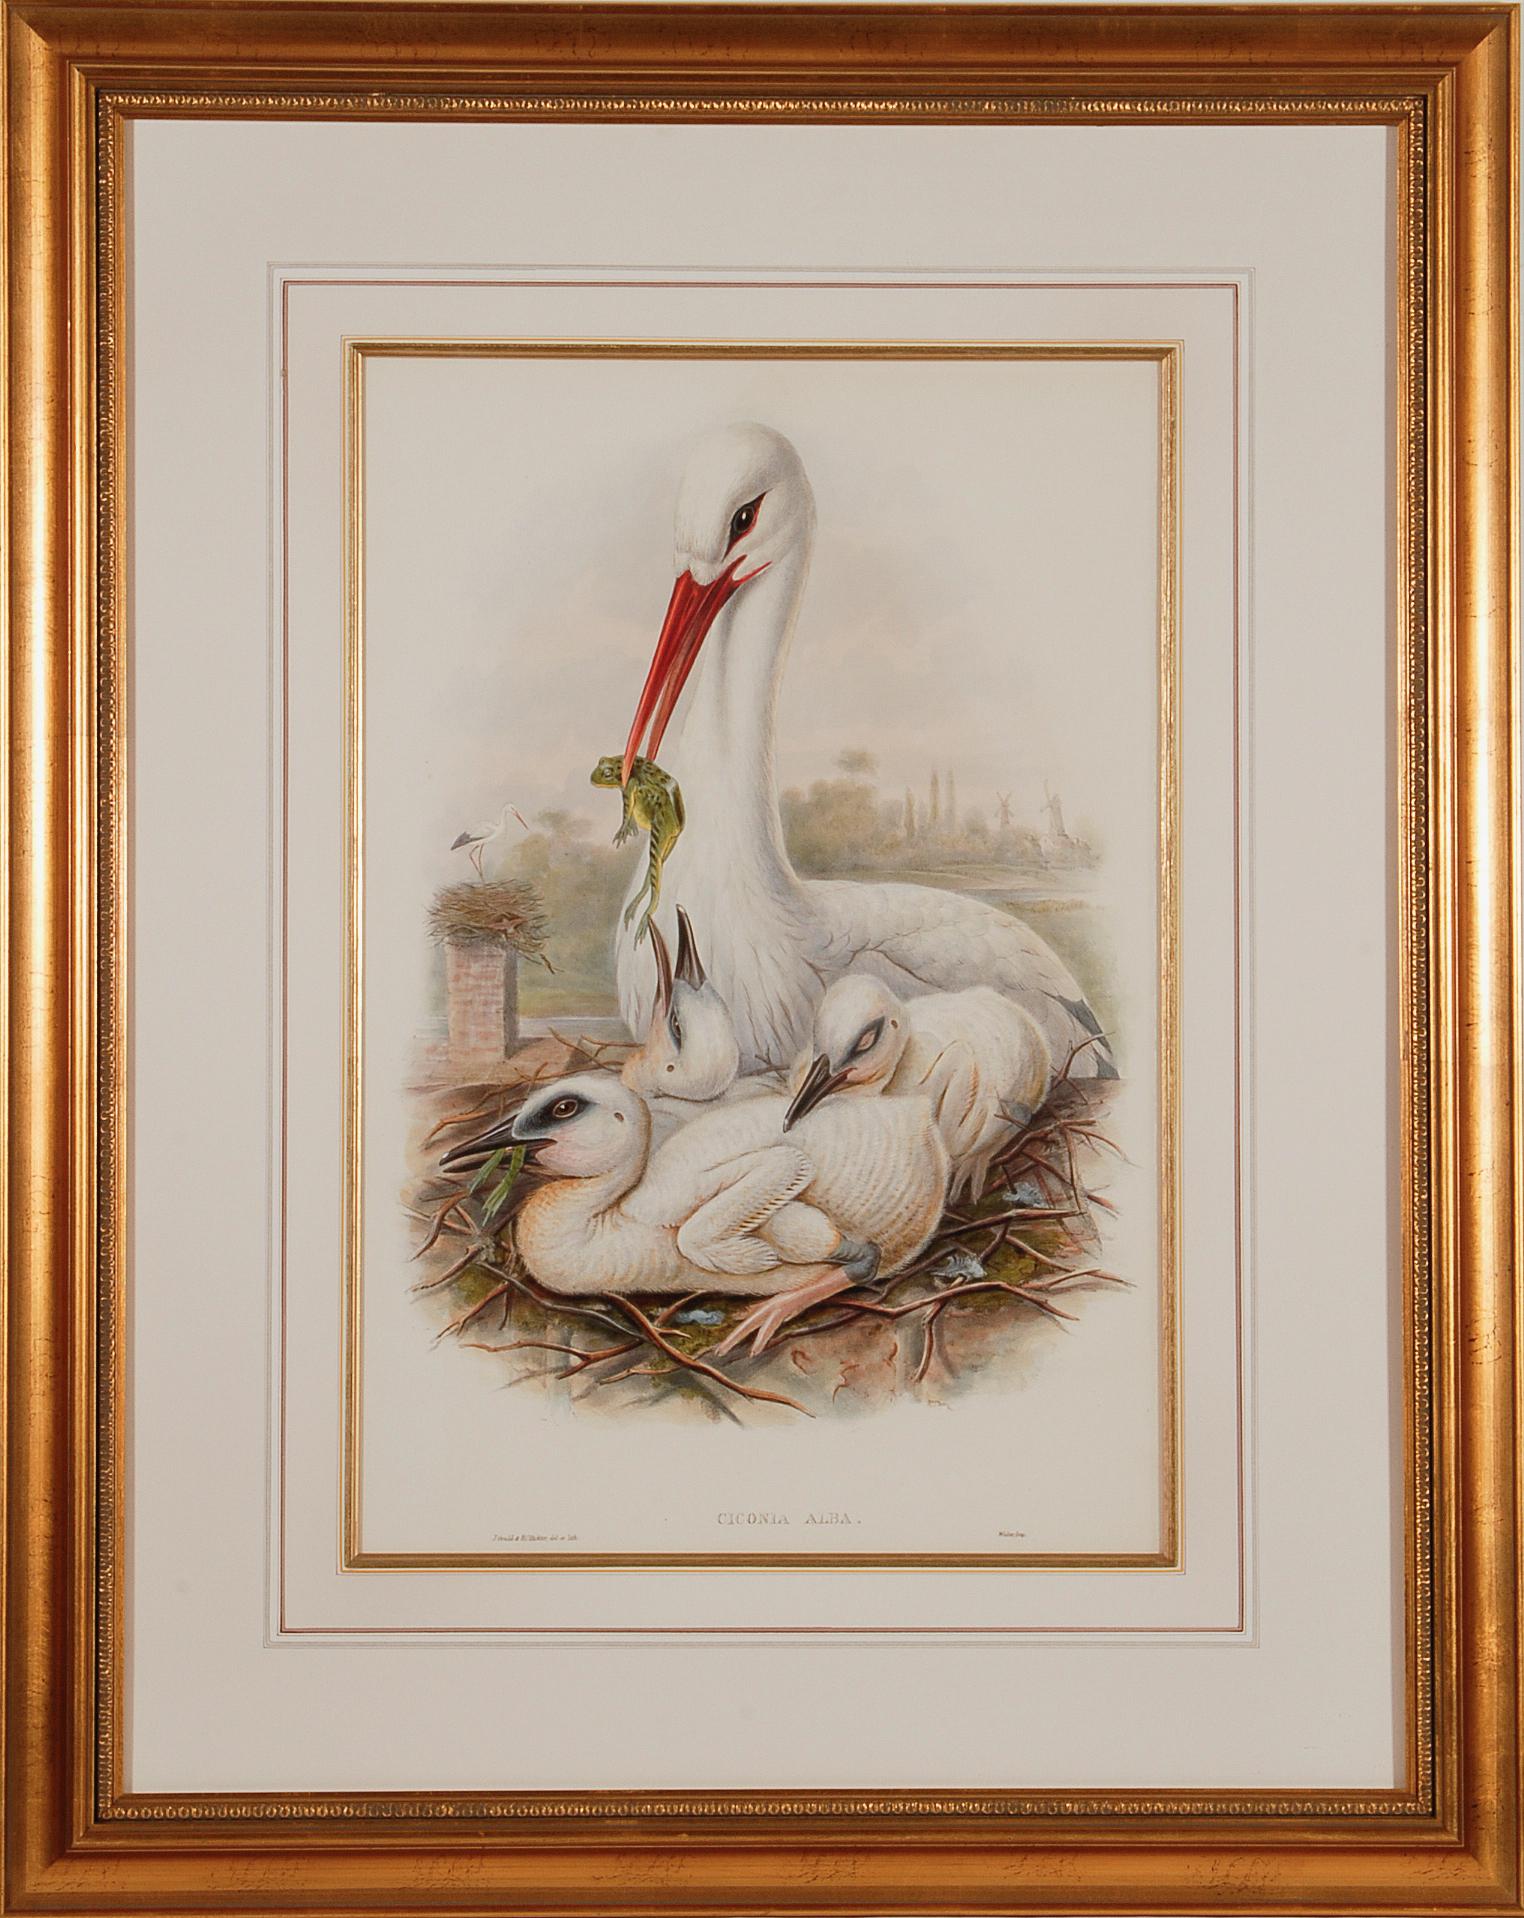 Stork-Familie: Eine gerahmte Original-Lithographie des 19. Jahrhunderts von Gould